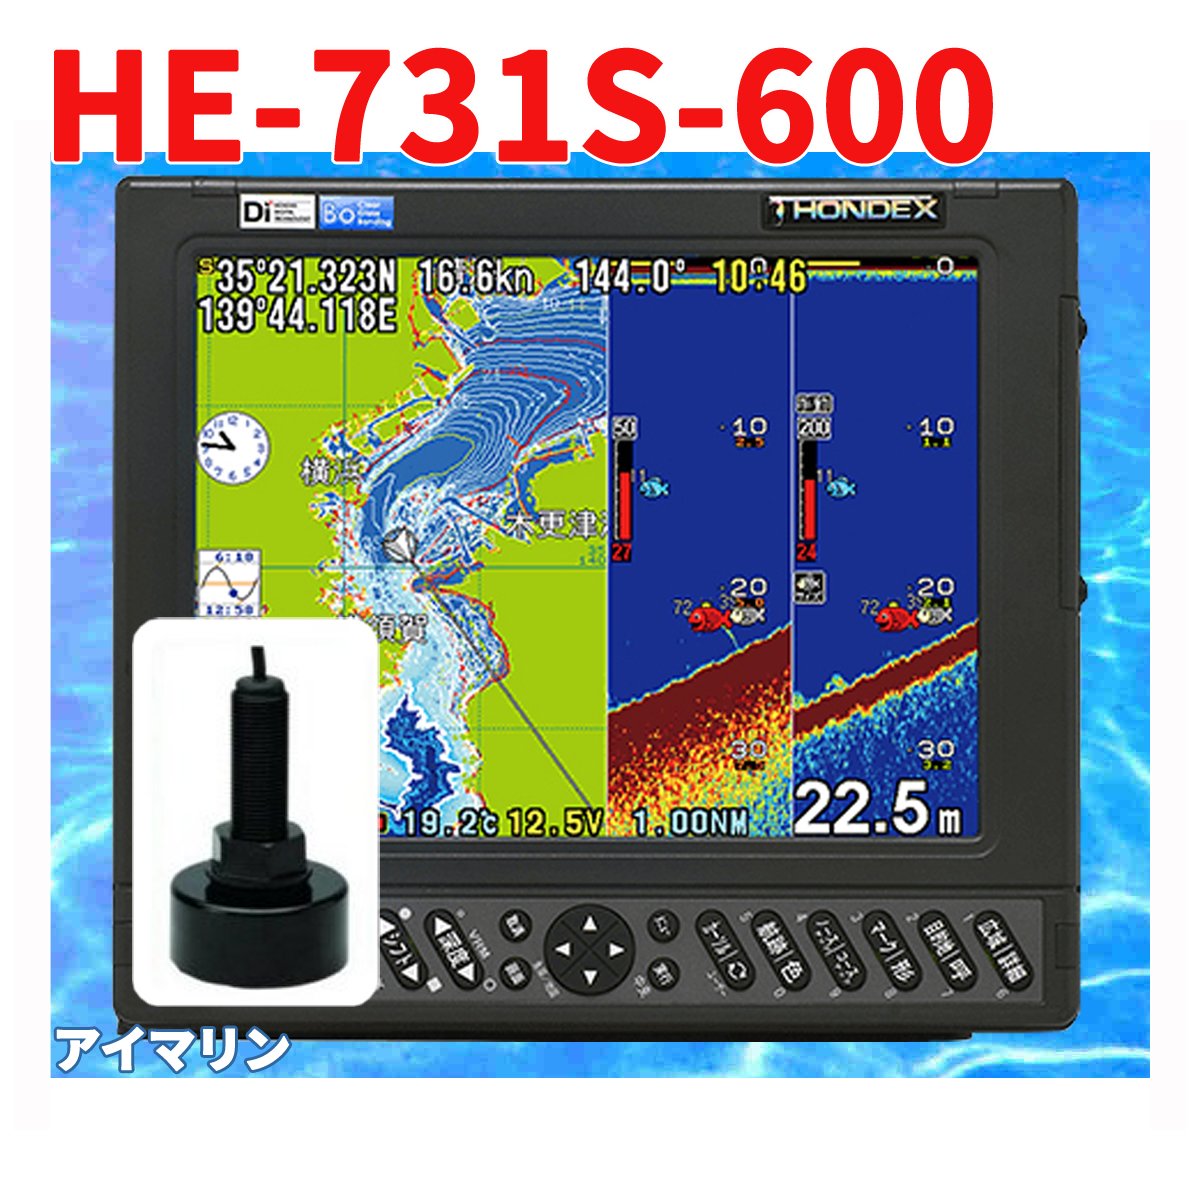 5/18 在庫あり 魚群探知機 HONDEX HE-731S 600w TD28 振動子付き GPS 魚探 アンテナ内蔵 ホンデックス